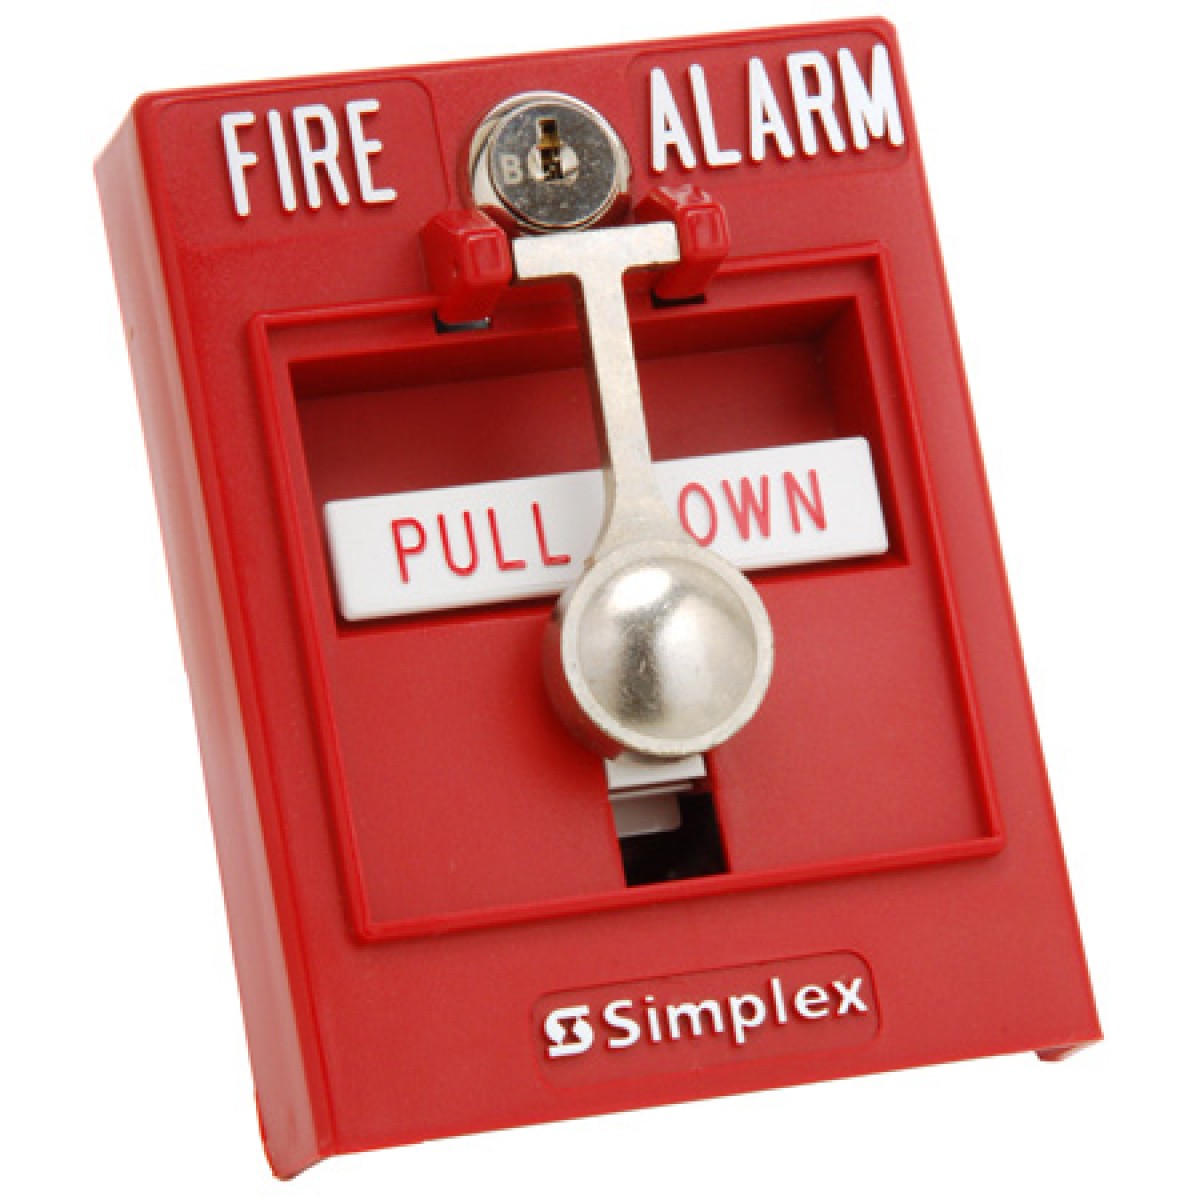 Пожарная кнопка купить. Извещатель пожарный ручной Simplex. Ручной Извещатель пожарный 4099-9701 Simplex. Simplex / 4099-9701 / Извещатель пожарный ручной, шт. Simplex пожарная сигнализация.